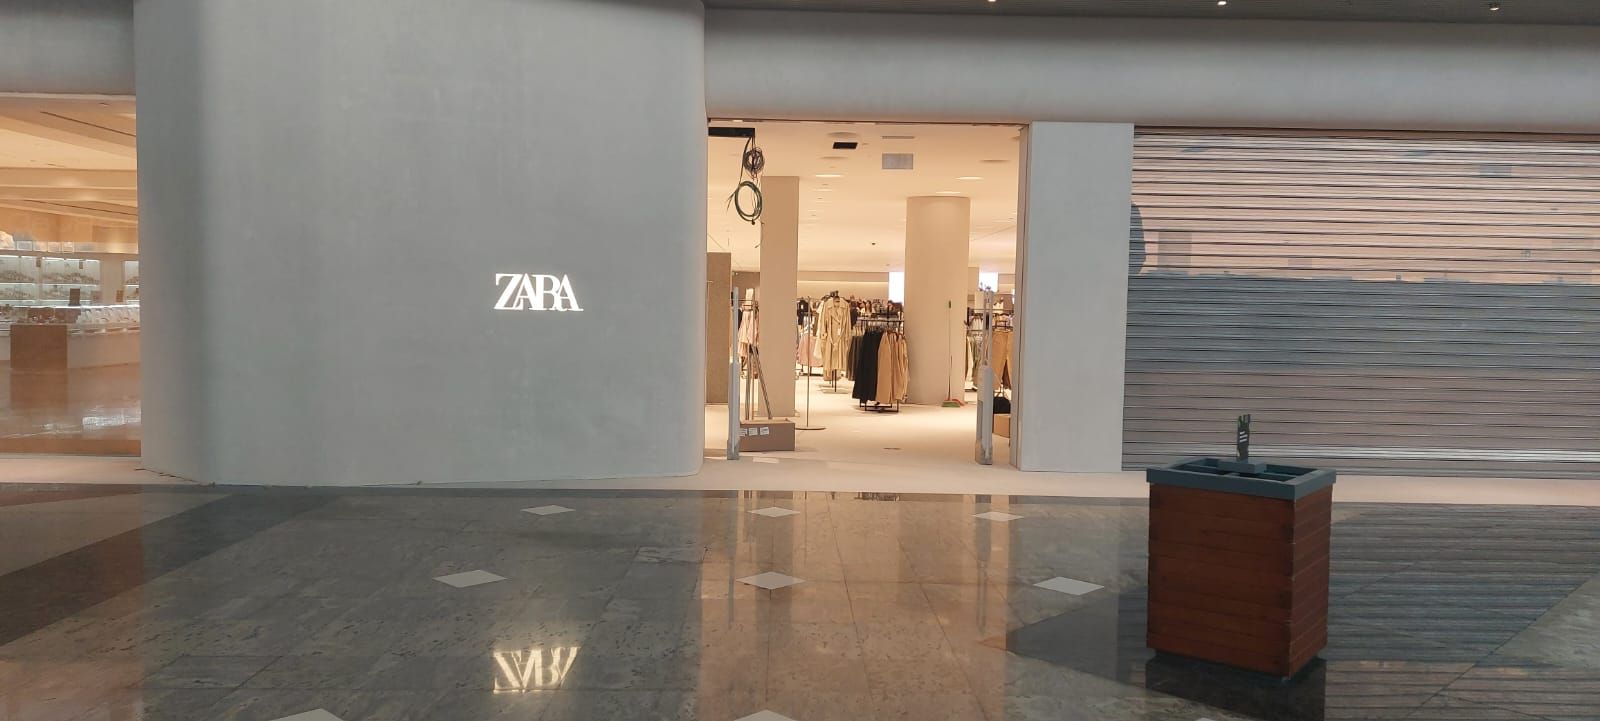 Así se ve ya la nueva tienda de Zara en Parque Principado, la mayor de Asturias y casi terminada